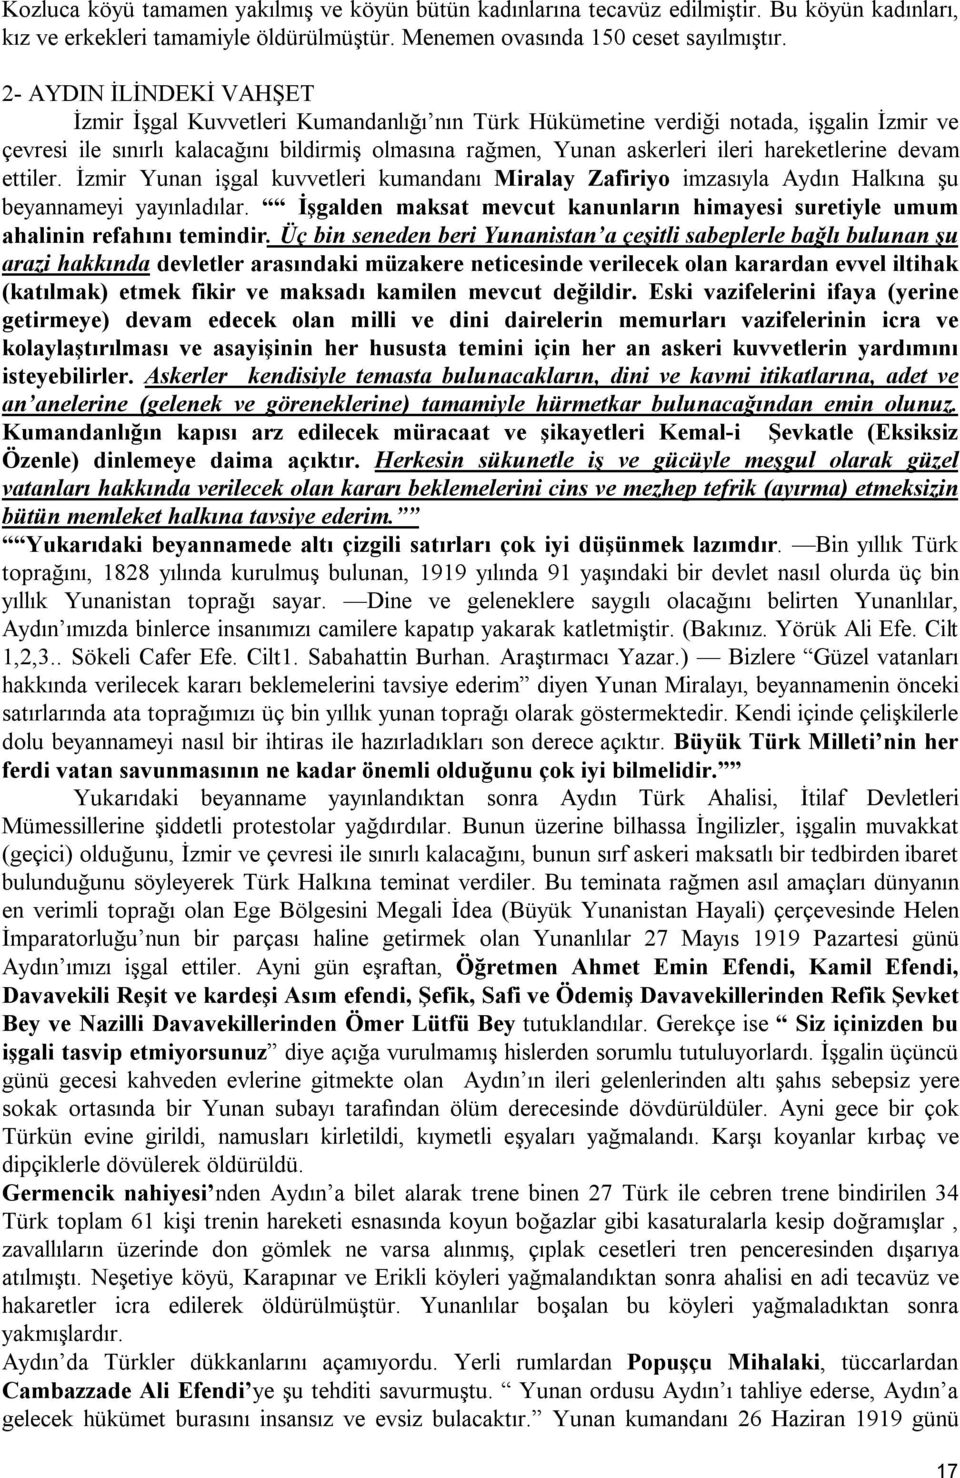 hareketlerine devam ettiler. İzmir Yunan işgal kuvvetleri kumandanı Miralay Zafiriyo imzasıyla Aydın Halkına şu beyannameyi yayınladılar.